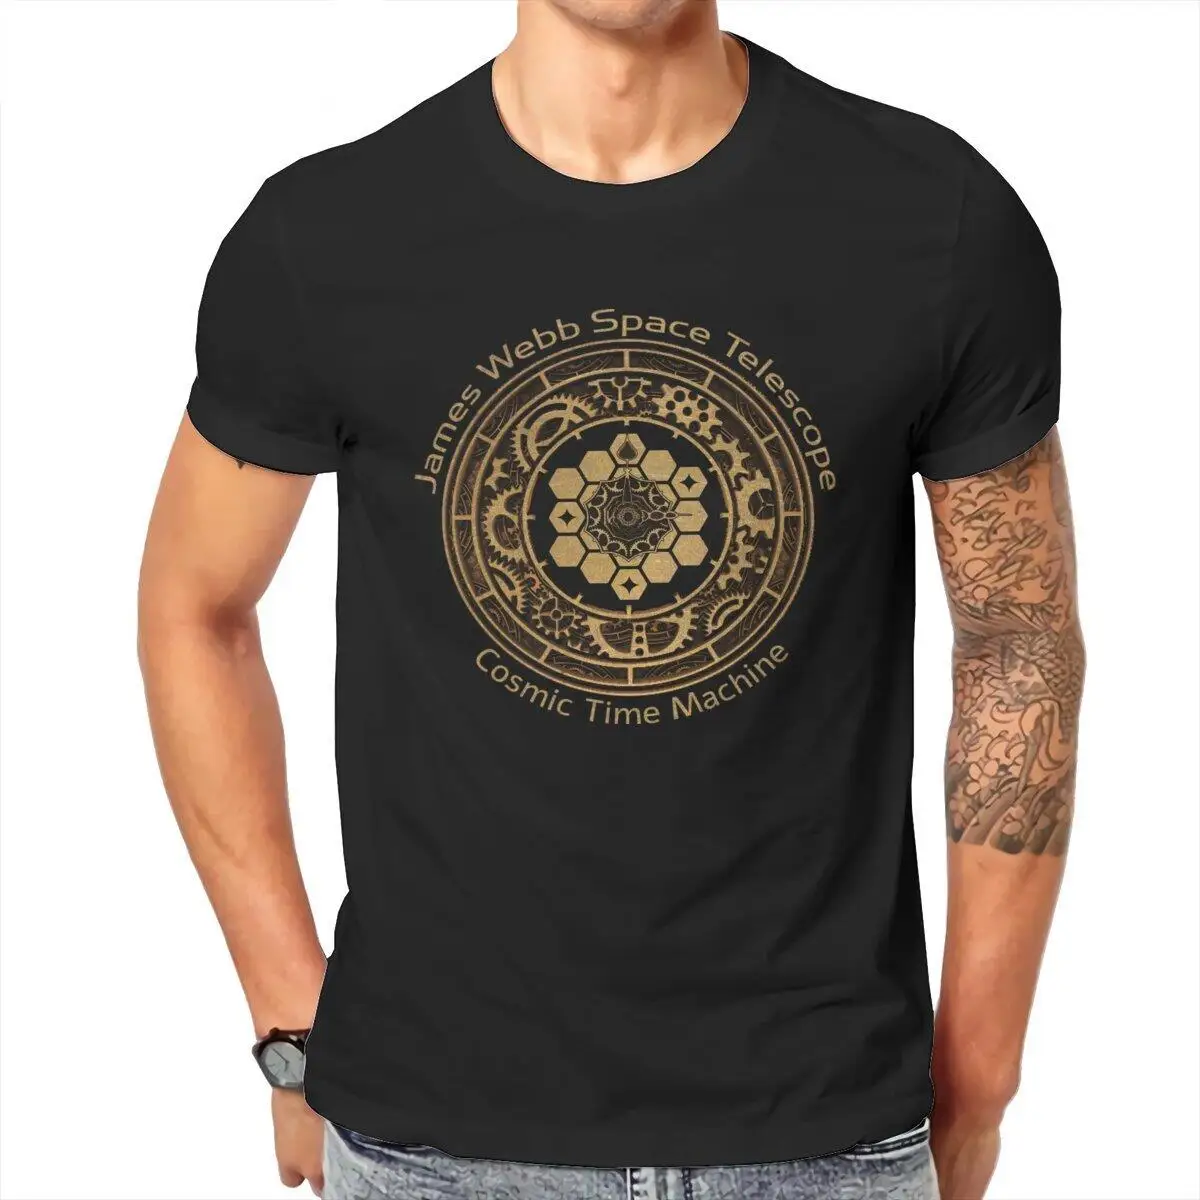 

Мужские футболки JWST James Webb с космическим телескопом, футболки с машинкой космического времени, хлопковая одежда, женская футболка с воротни...